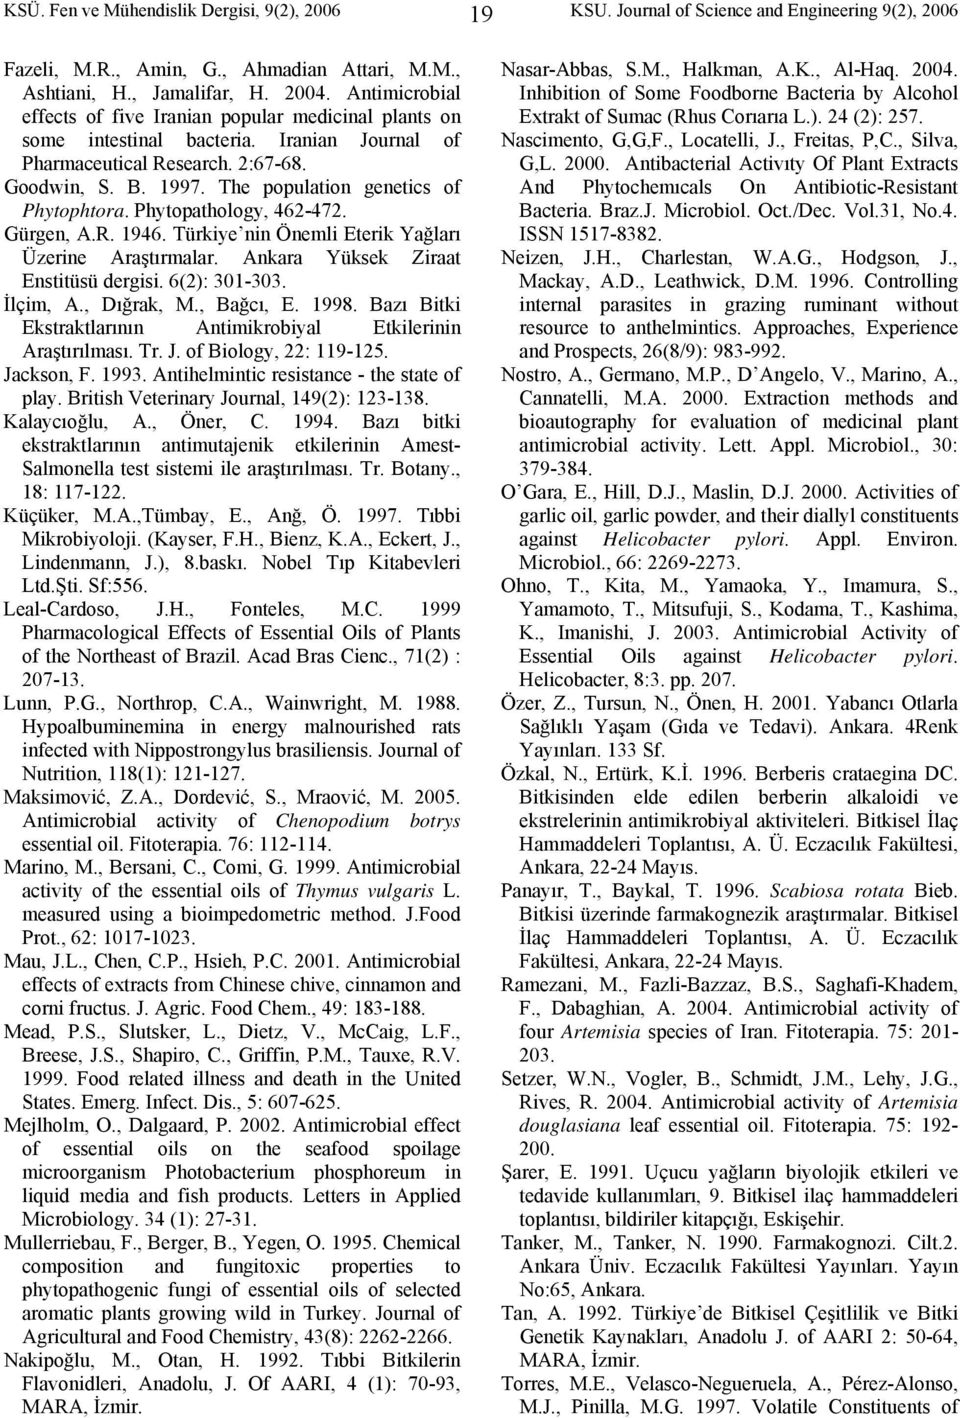 The population genetics of Phytophtora. Phytopathology, 462-472. Gürgen, A.R. 1946. Türkiye nin Önemli Eterik Yağları Üzerine Araştırmalar. Ankara Yüksek Ziraat Enstitüsü dergisi. 6(2): 301-303.